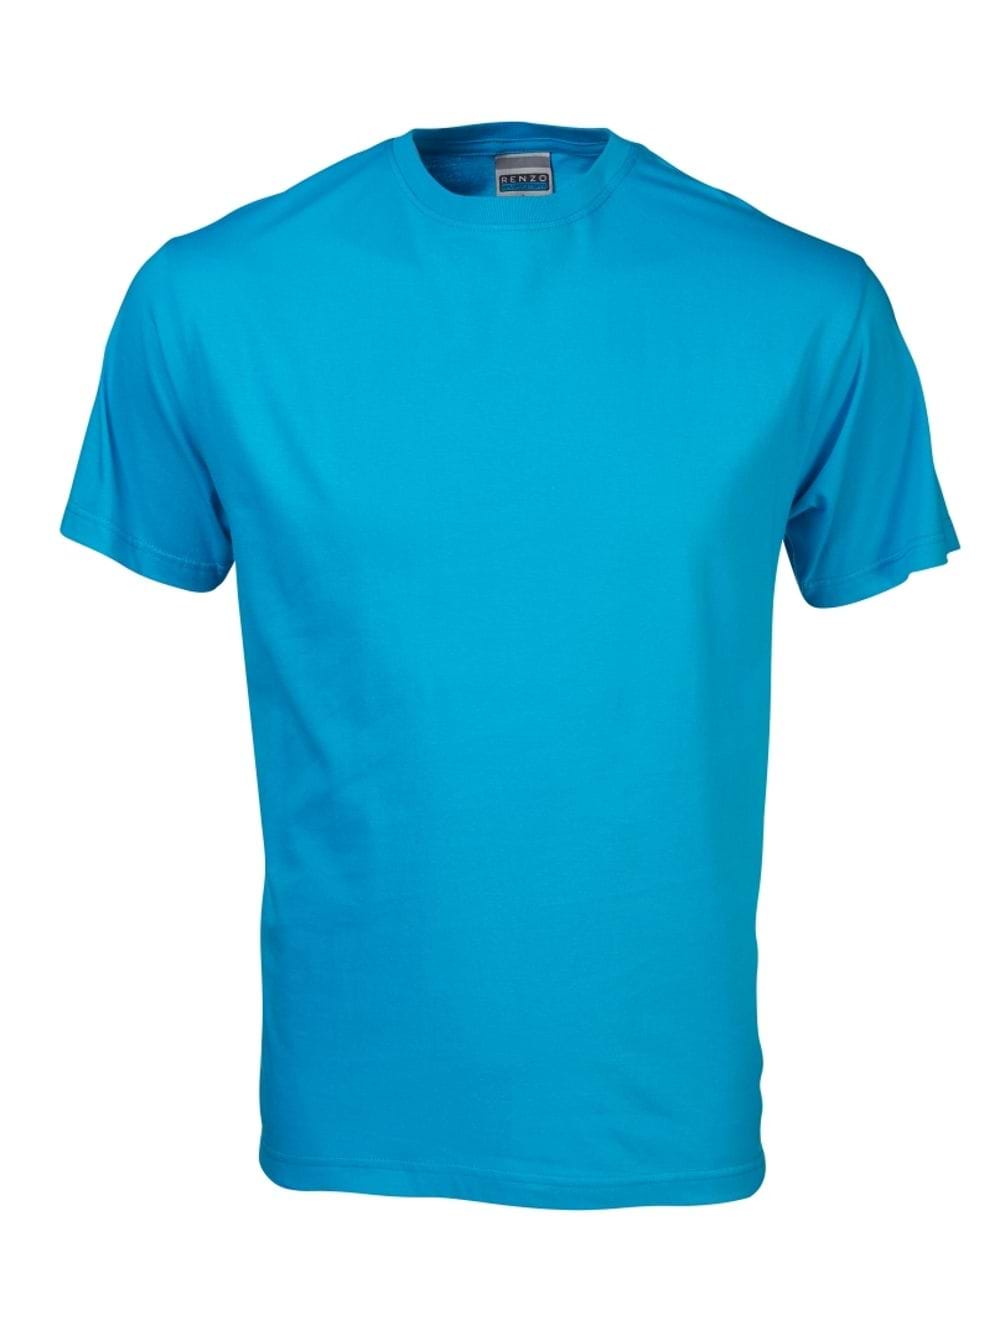 165G Crew Neck T-Shirt - Cyan Blue / SS